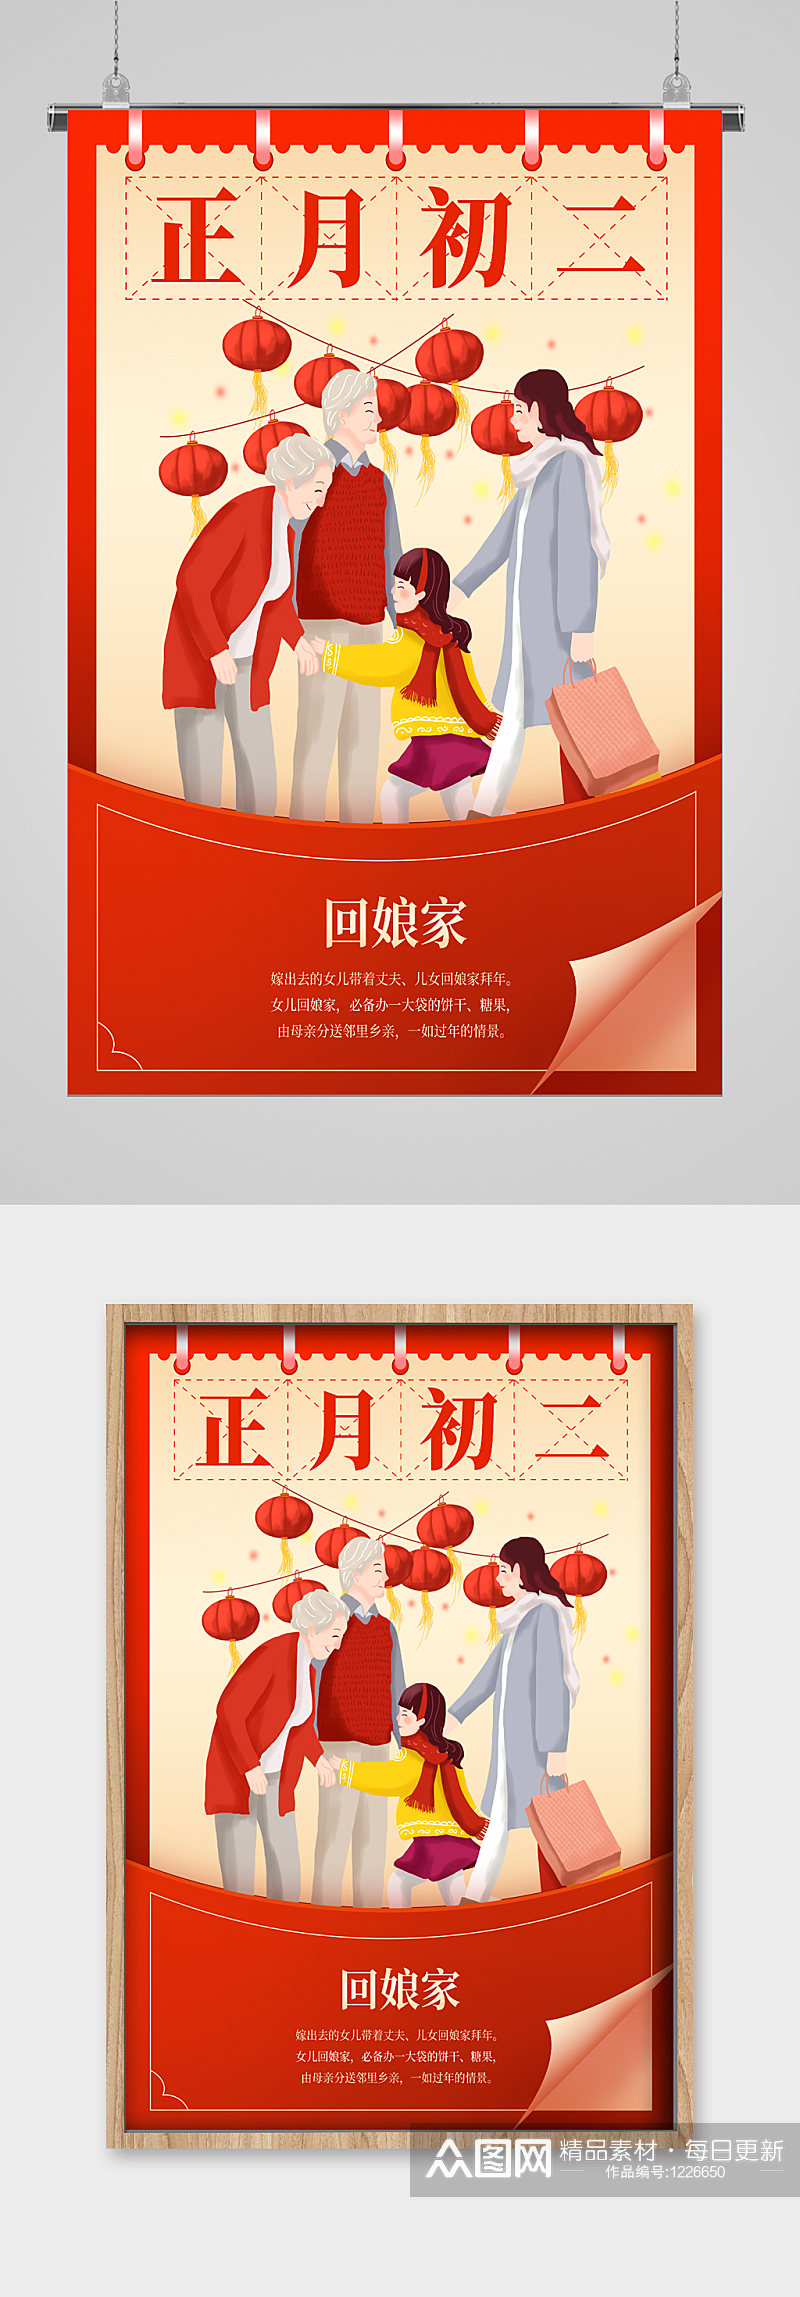 新春习俗正月初二回娘家宣传海报素材